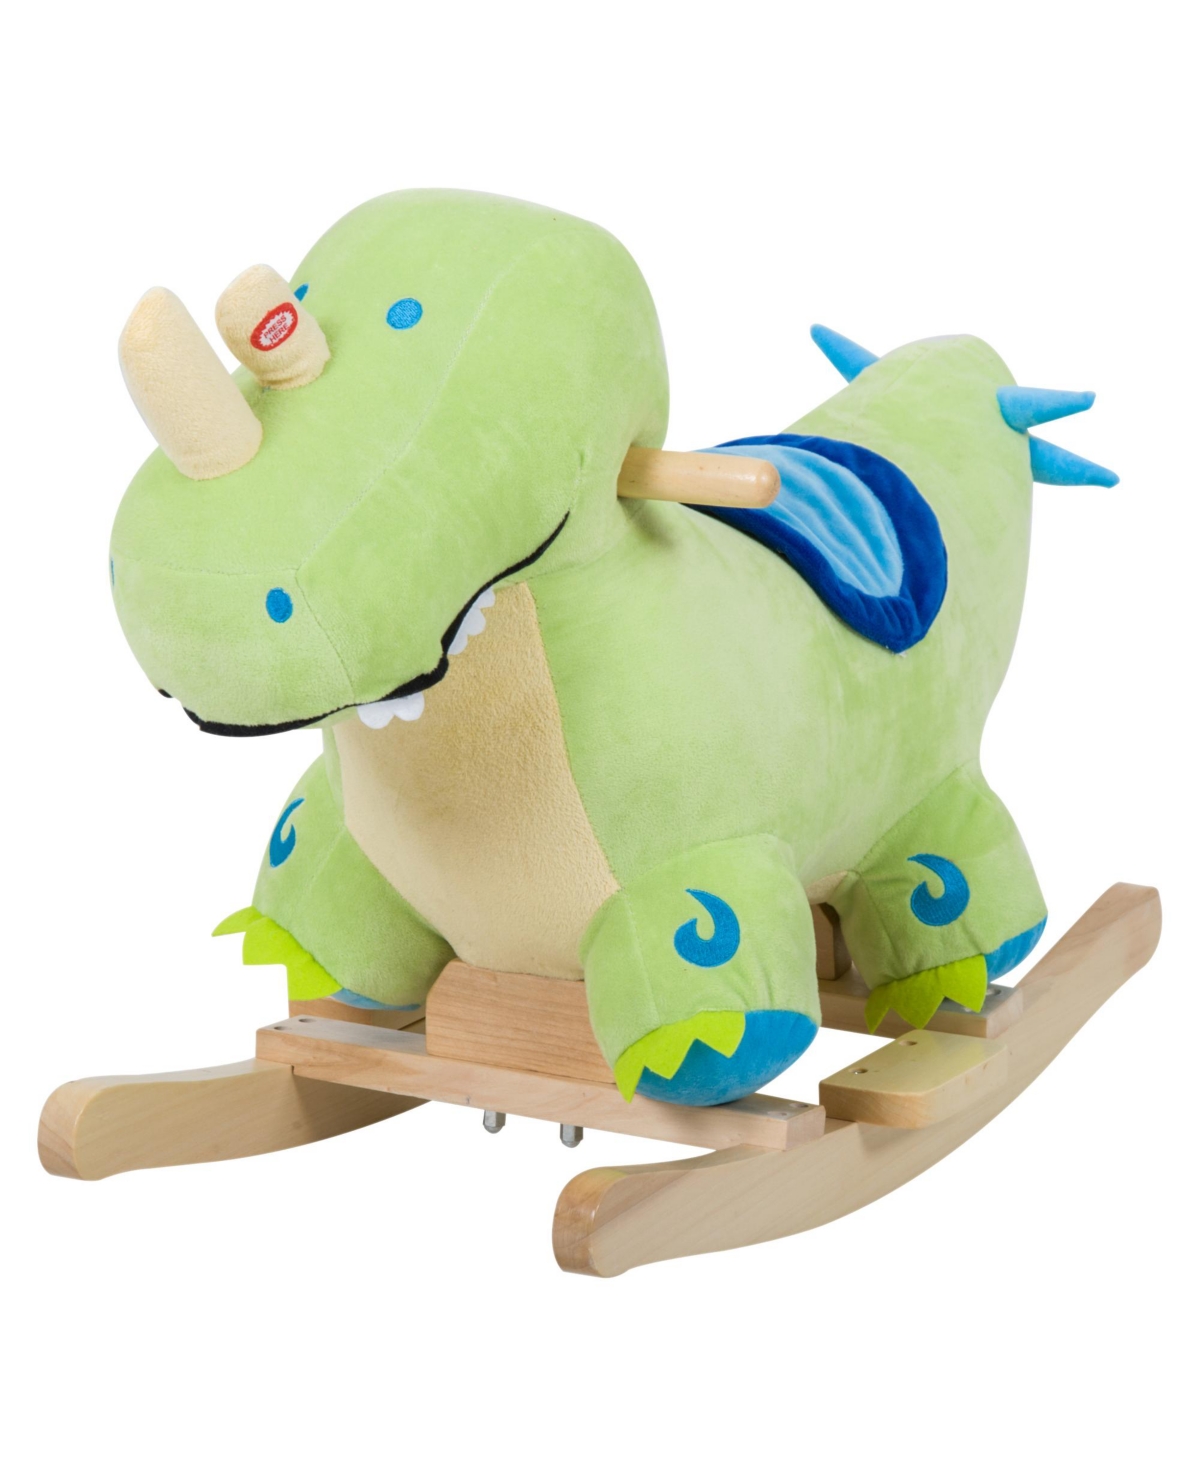 Qaba Kids Plush Ride-on Toy Rocking Horse Dinosaur Baby Animal Rocker In Green